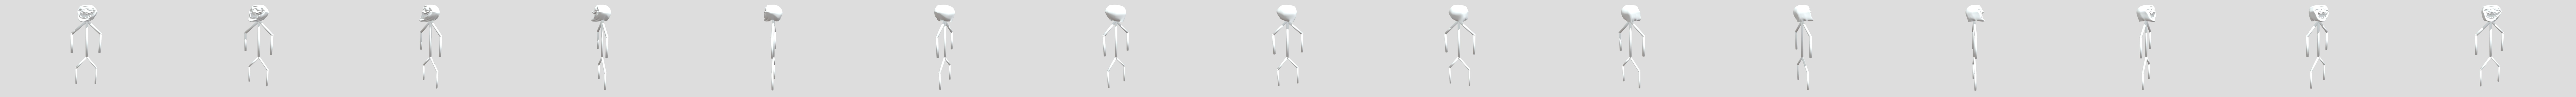 Troll-face-3d-model 3D models - Sketchfab